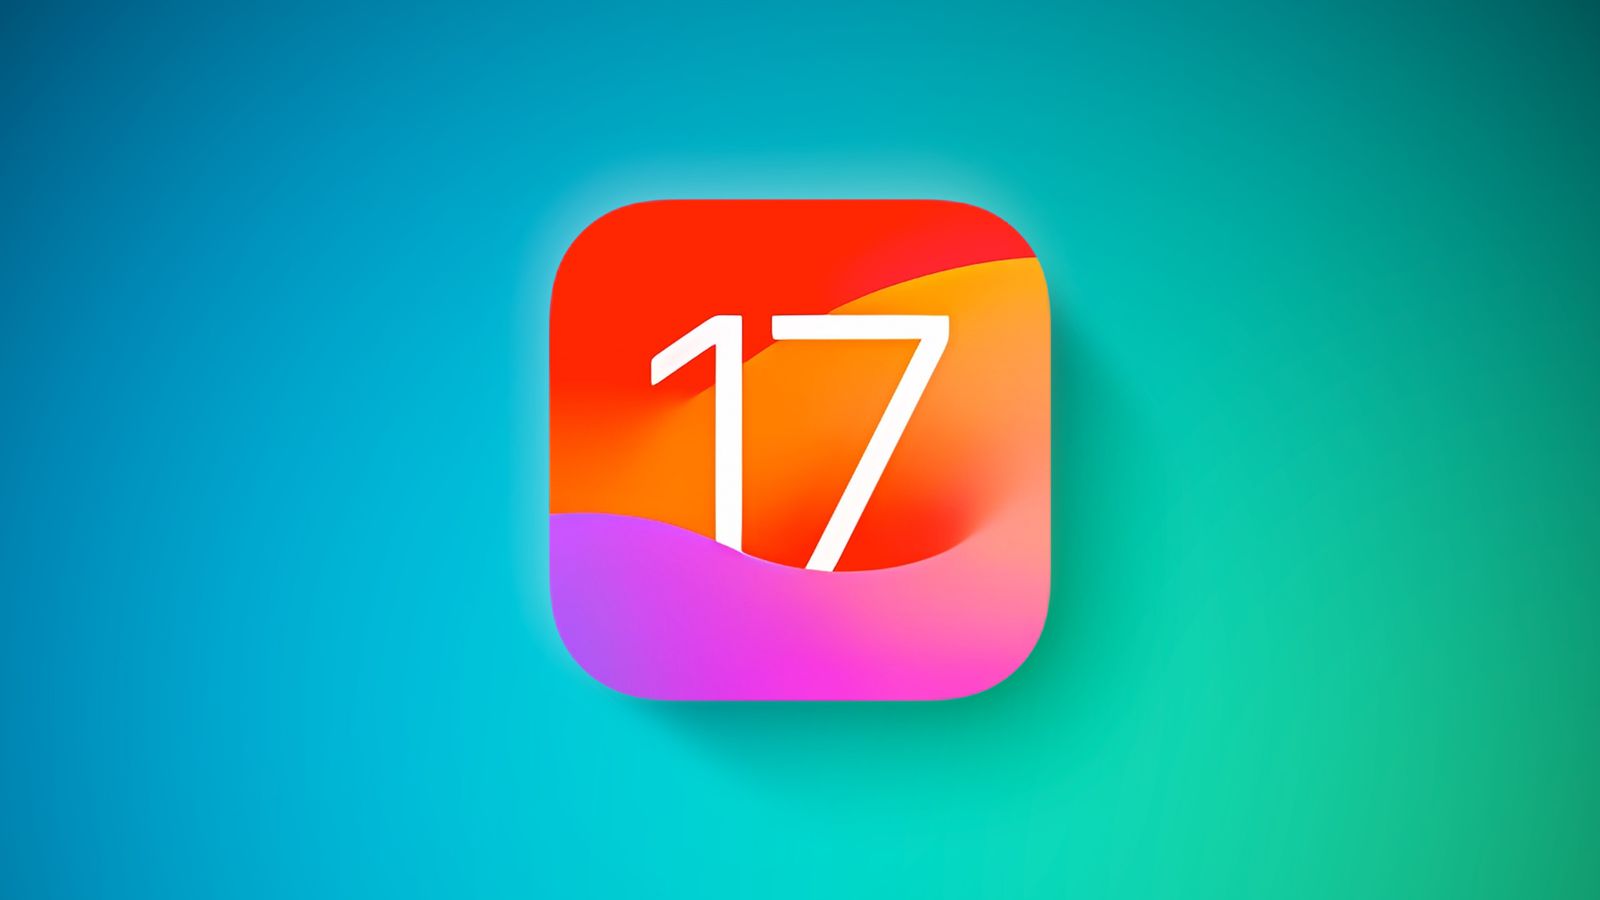 Вышла обновленная iOS 17 beta 4 для разработчиков